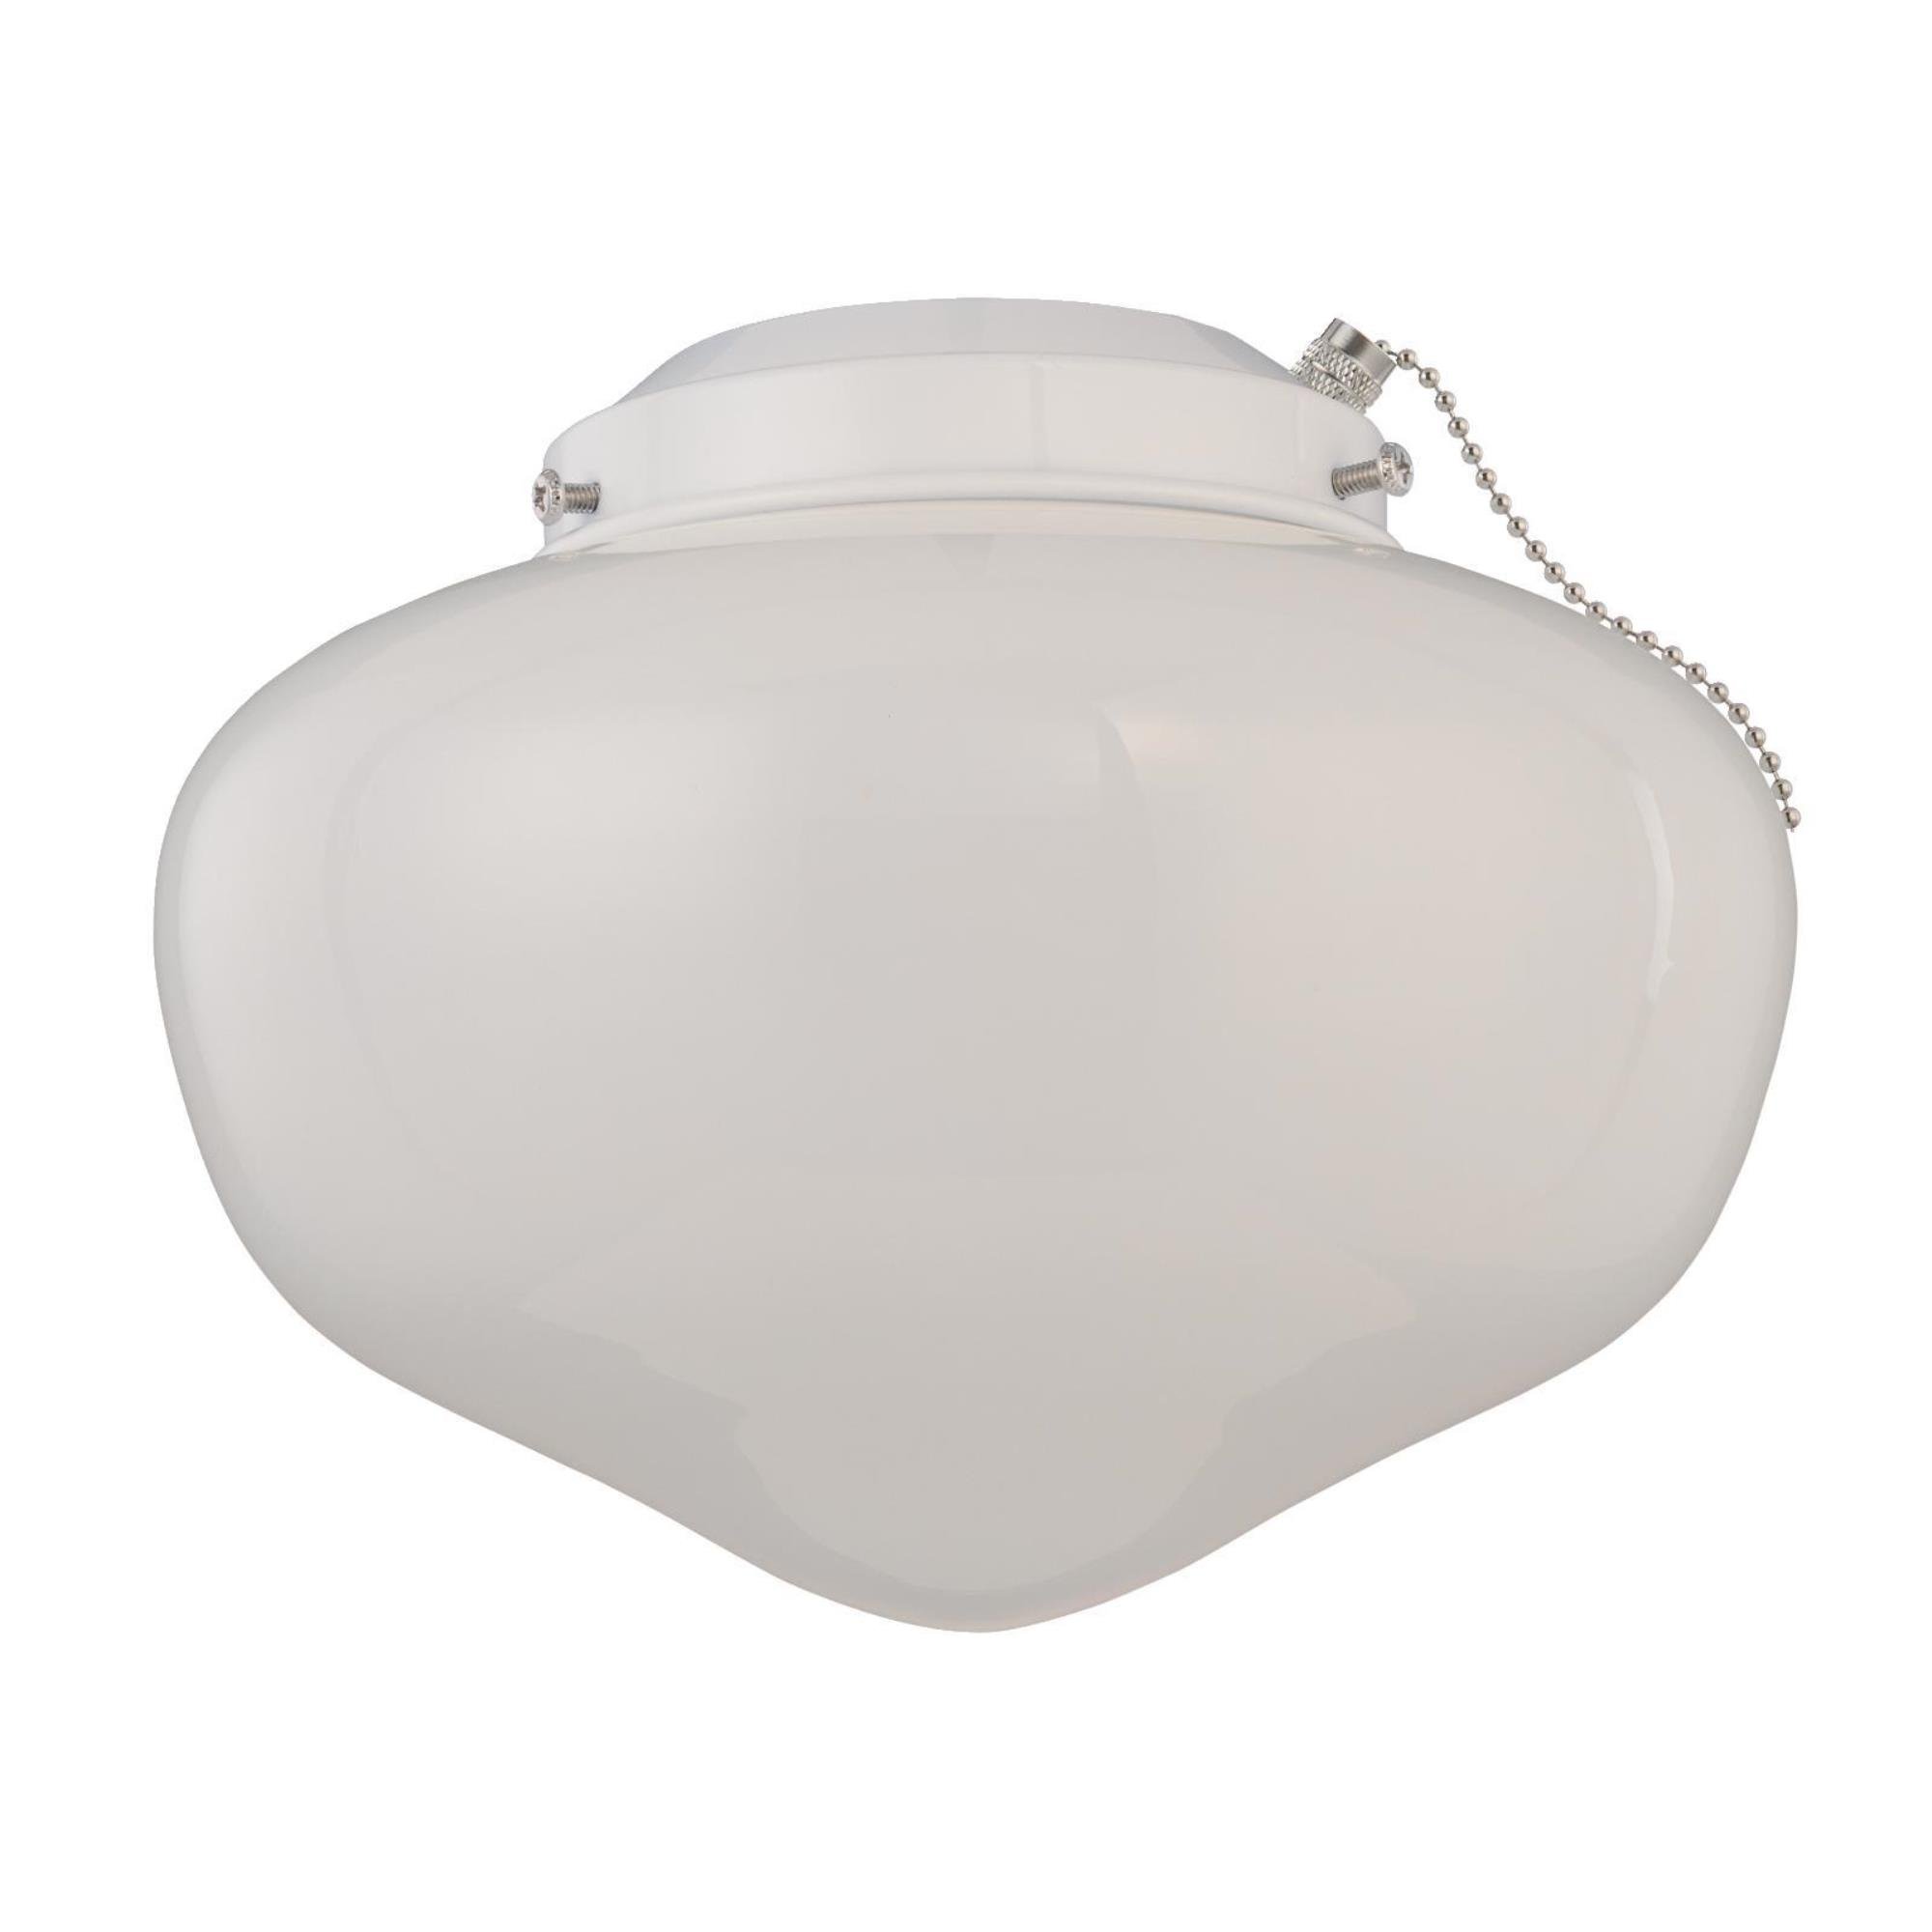 LED Schoolhouse Ceiling Fan Light Kit White Finish White Opal Glass